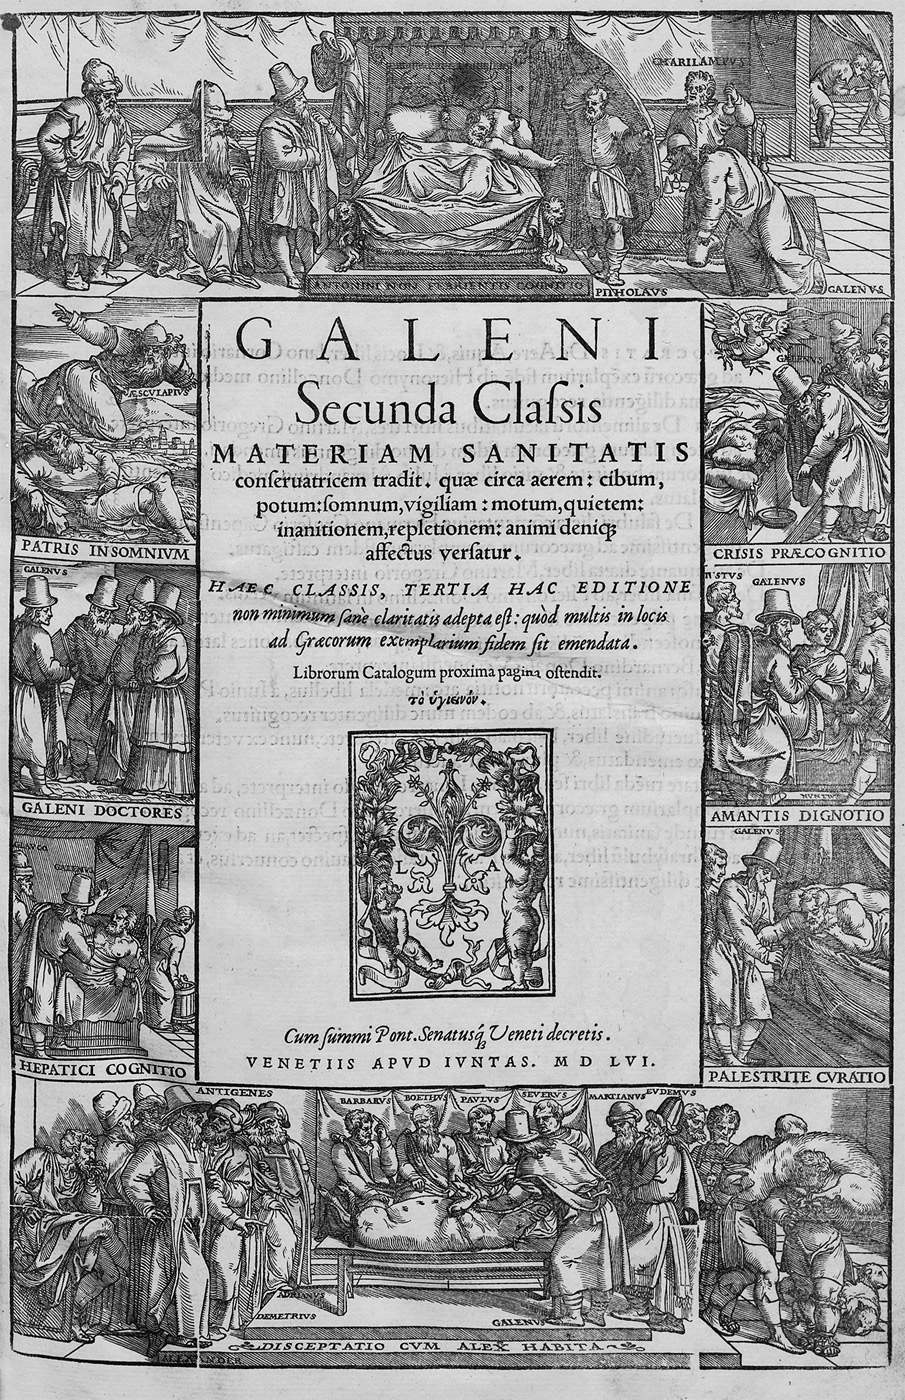 Lot 1111, Auction  115, Galenus, Claudius, Galeni Secunda classis materiam sanitatis conservatricem tradit